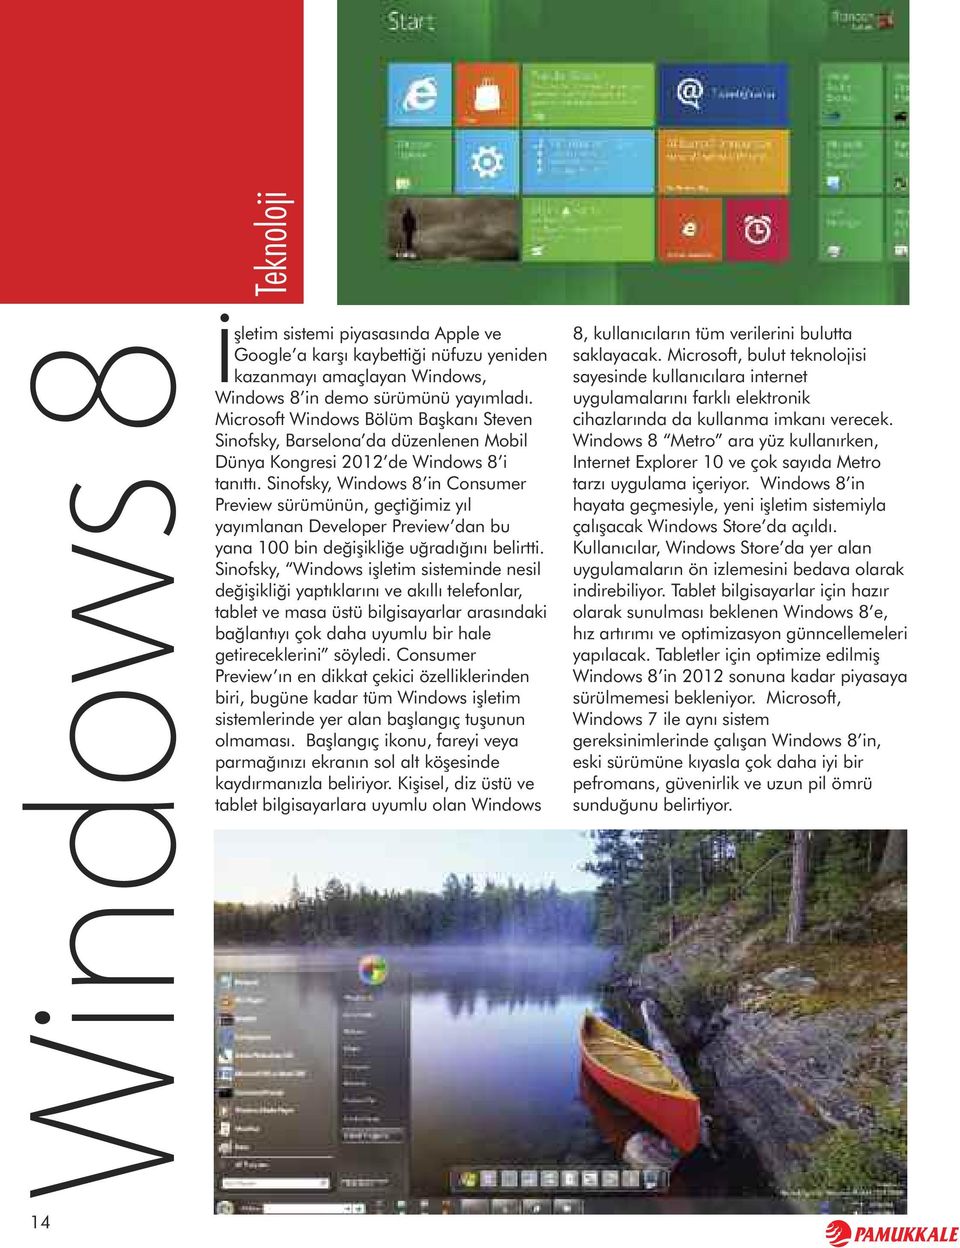 Sinofsky, Windows 8 in Consumer Preview sürümünün, geçtiğimiz yıl yayımlanan Developer Preview dan bu yana 100 bin değişikliğe uğradığını belirtti.